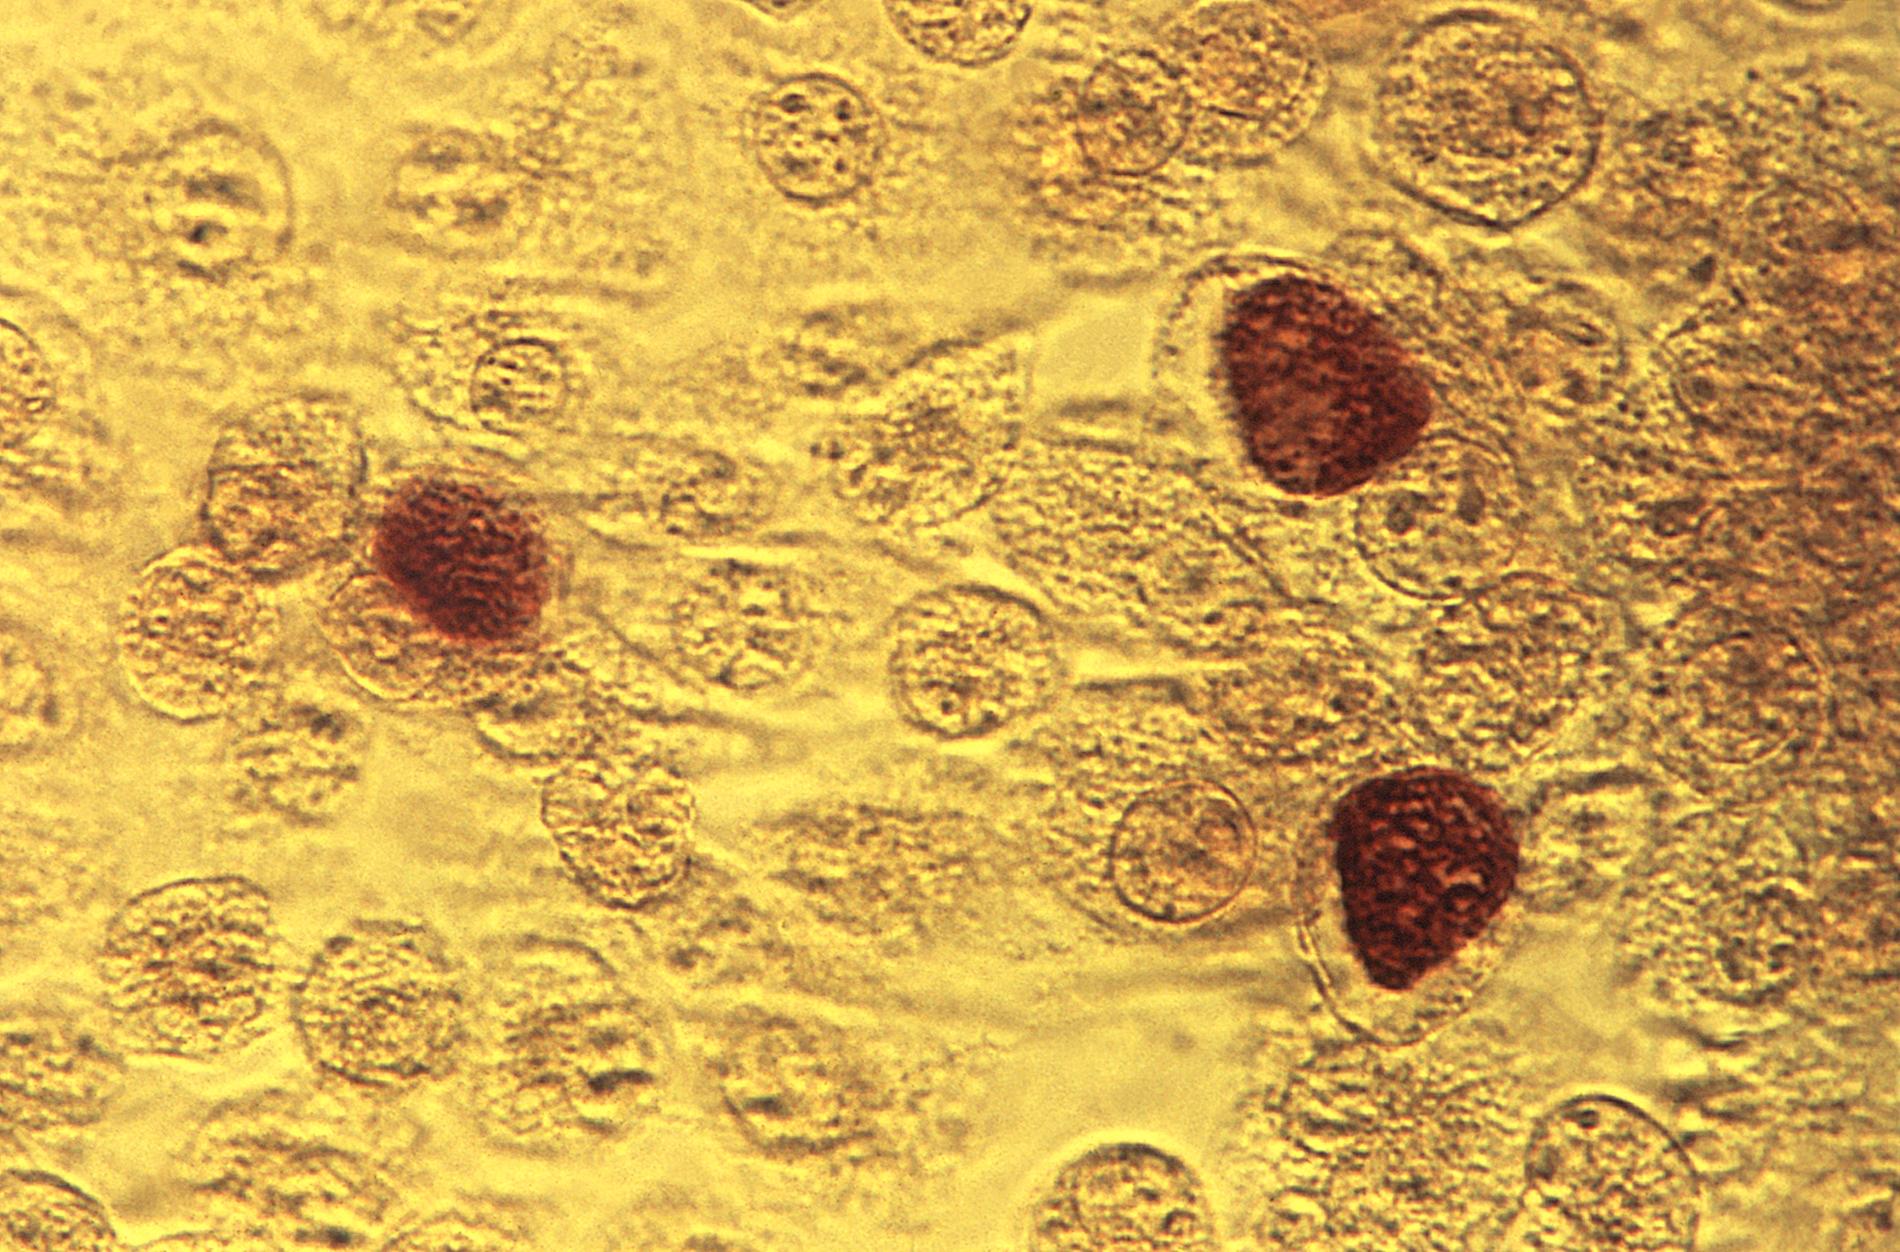 En klamydiabakterie uppförstorad 200 gånger, sedd genom ett mikroskop 1975. Bilden är tagen av den amerikanska folkhälsomyndigheten, Centers for disease control and prevention.